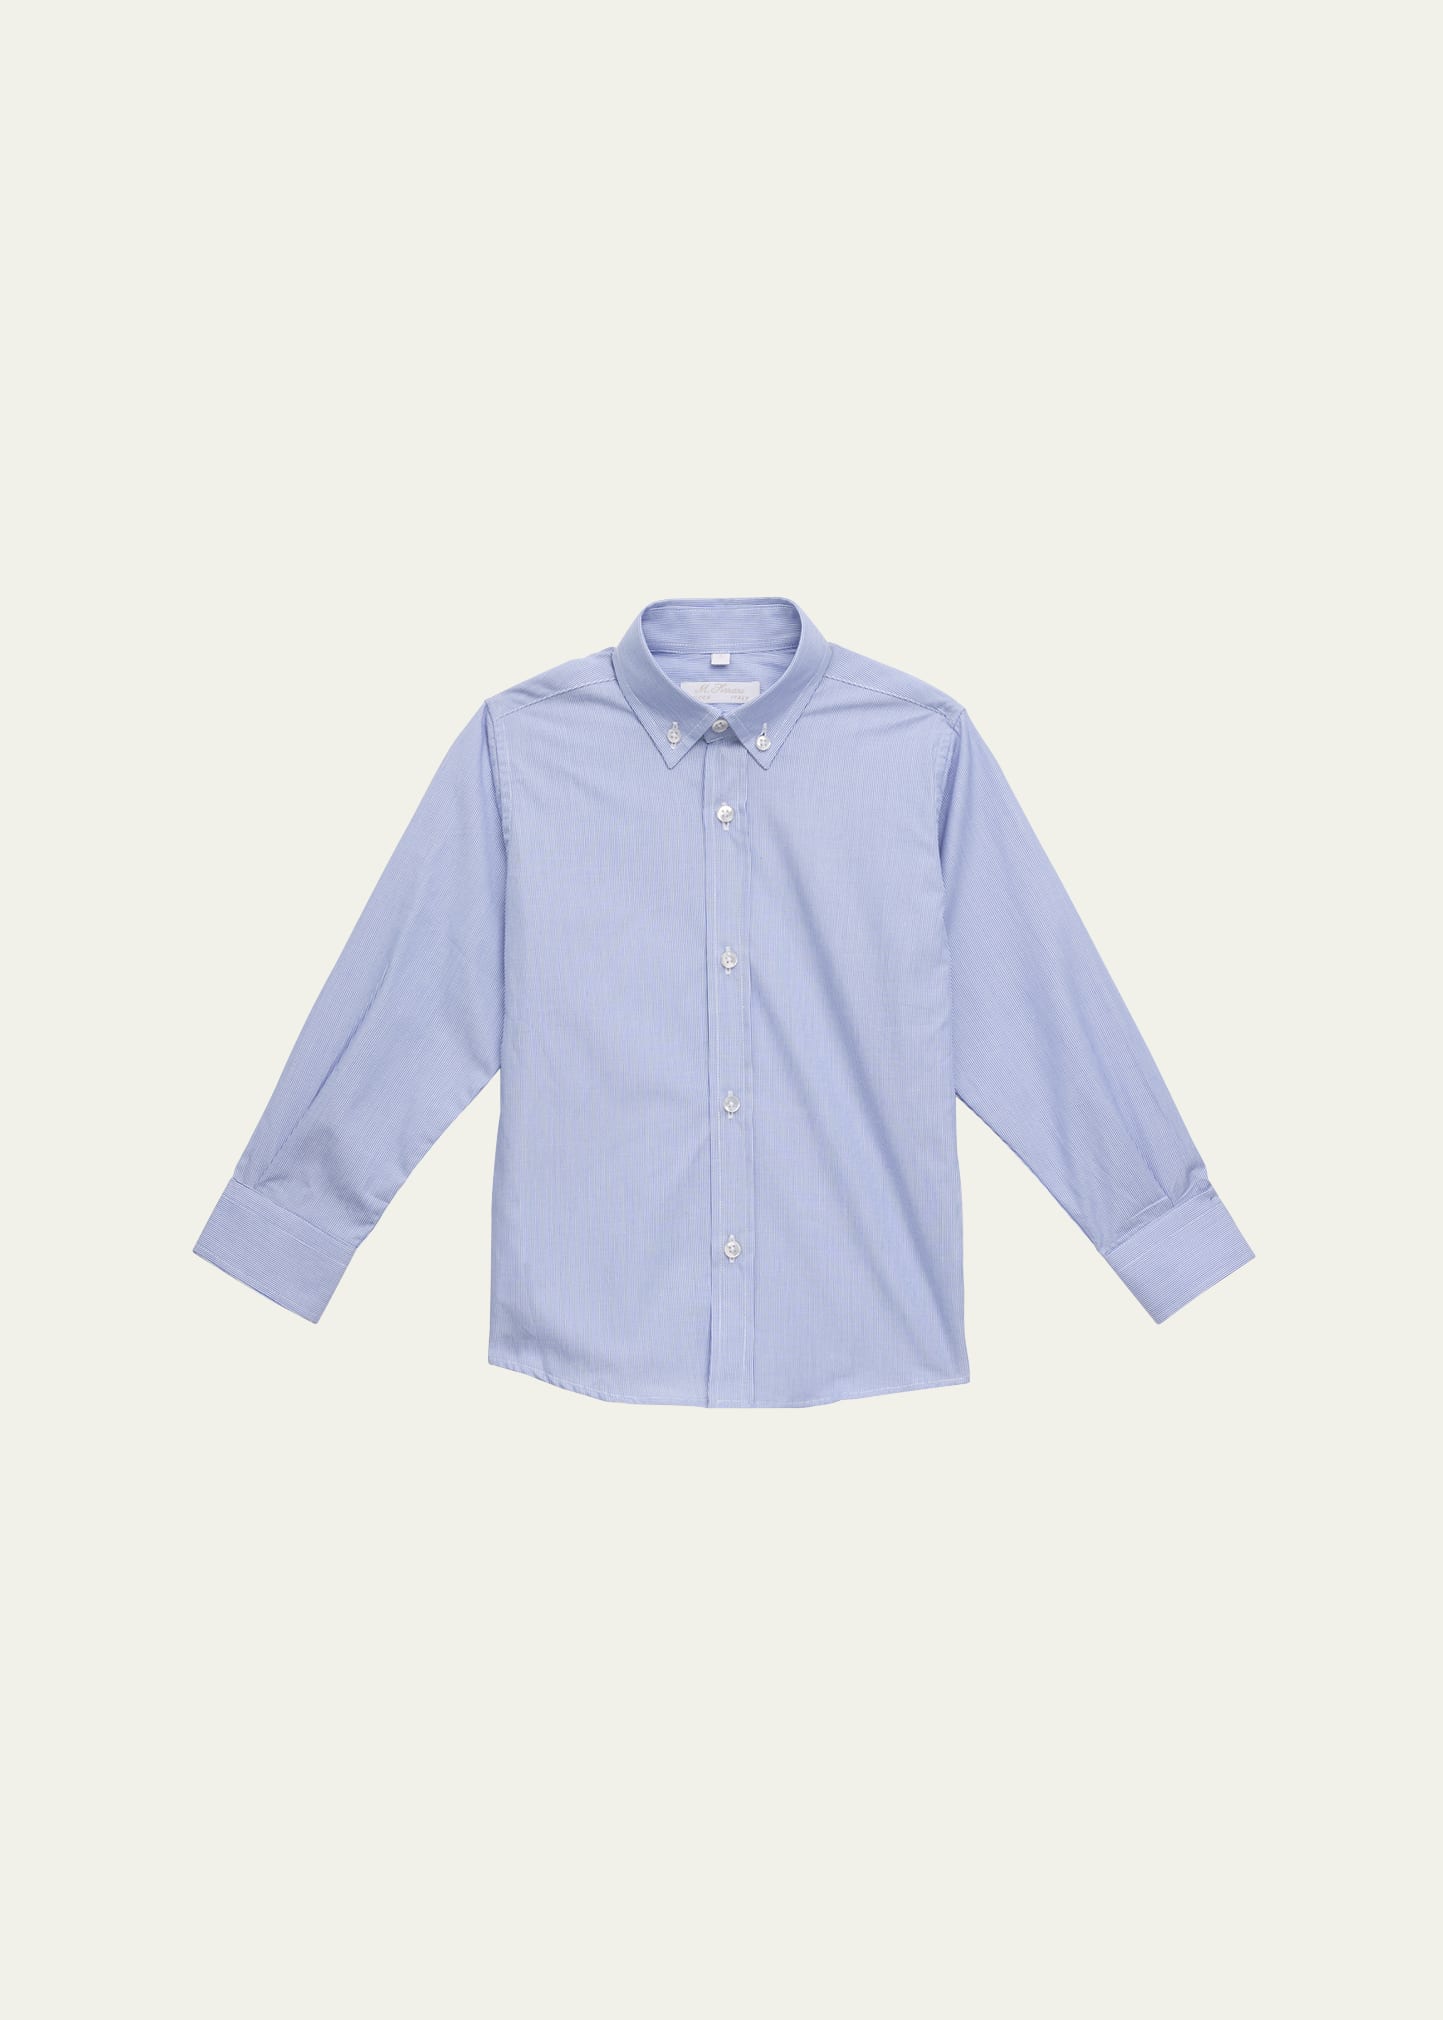 Boy's Button Up Shirt, Size 3-12